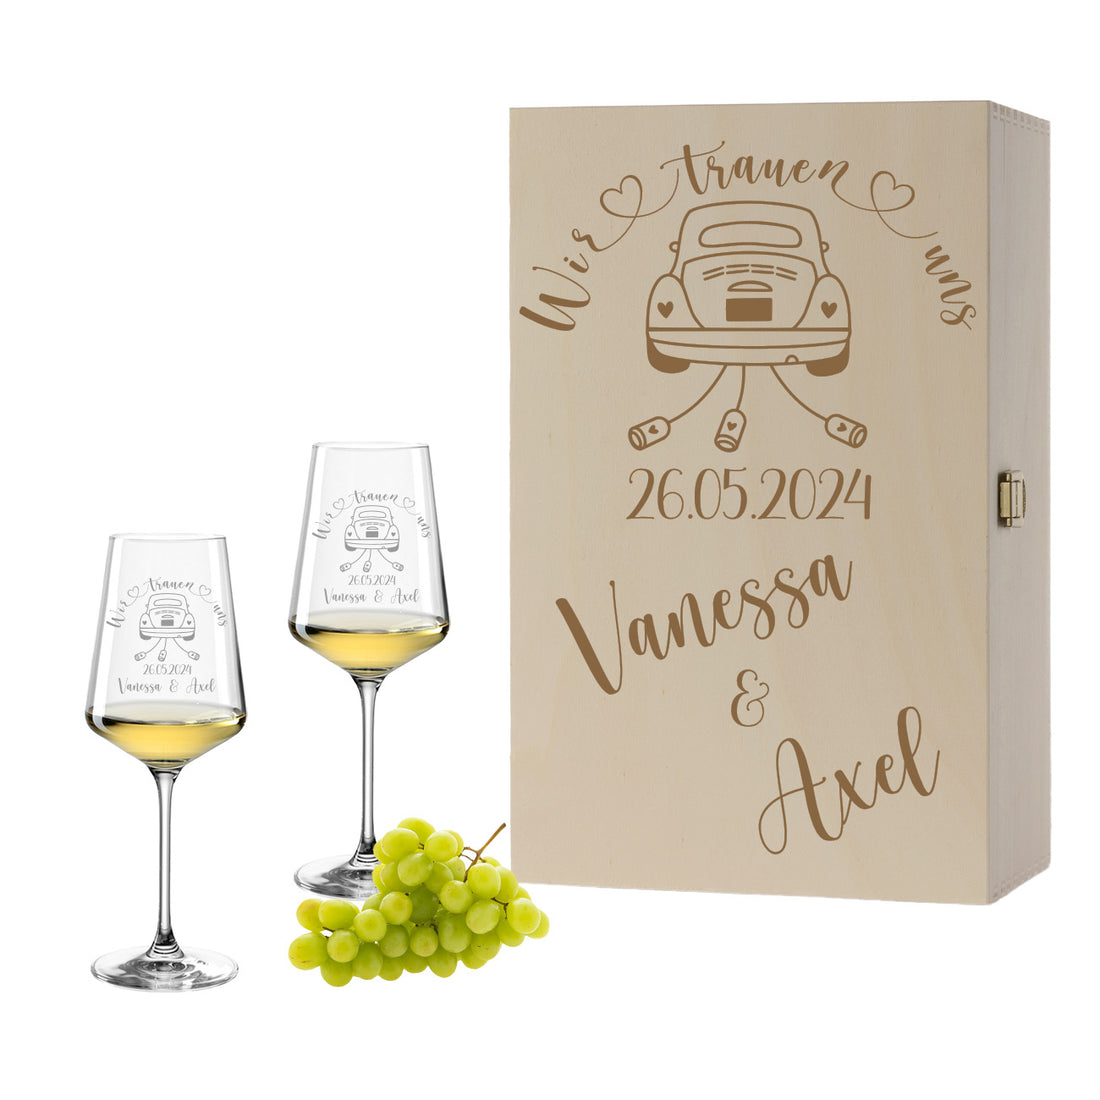 Weinglas mit Gravur Leonardo Puccini "WIR TRAUEN UNS" Motiv Auto 2 Gläser und Holzbox groß mit Wunschname & Datum